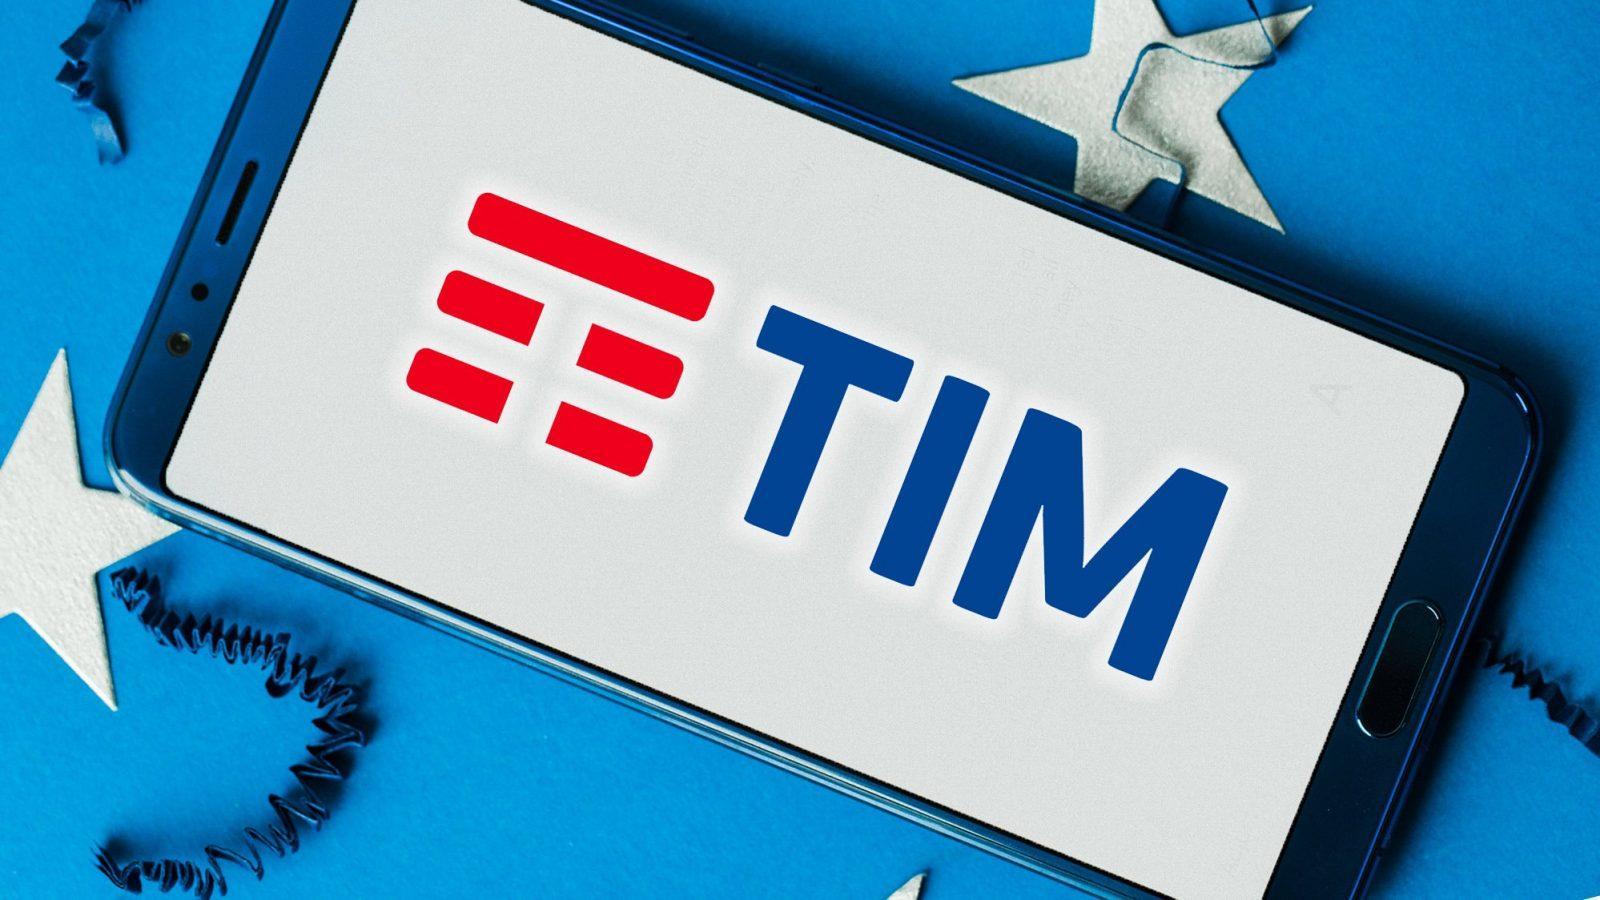 TIM logo